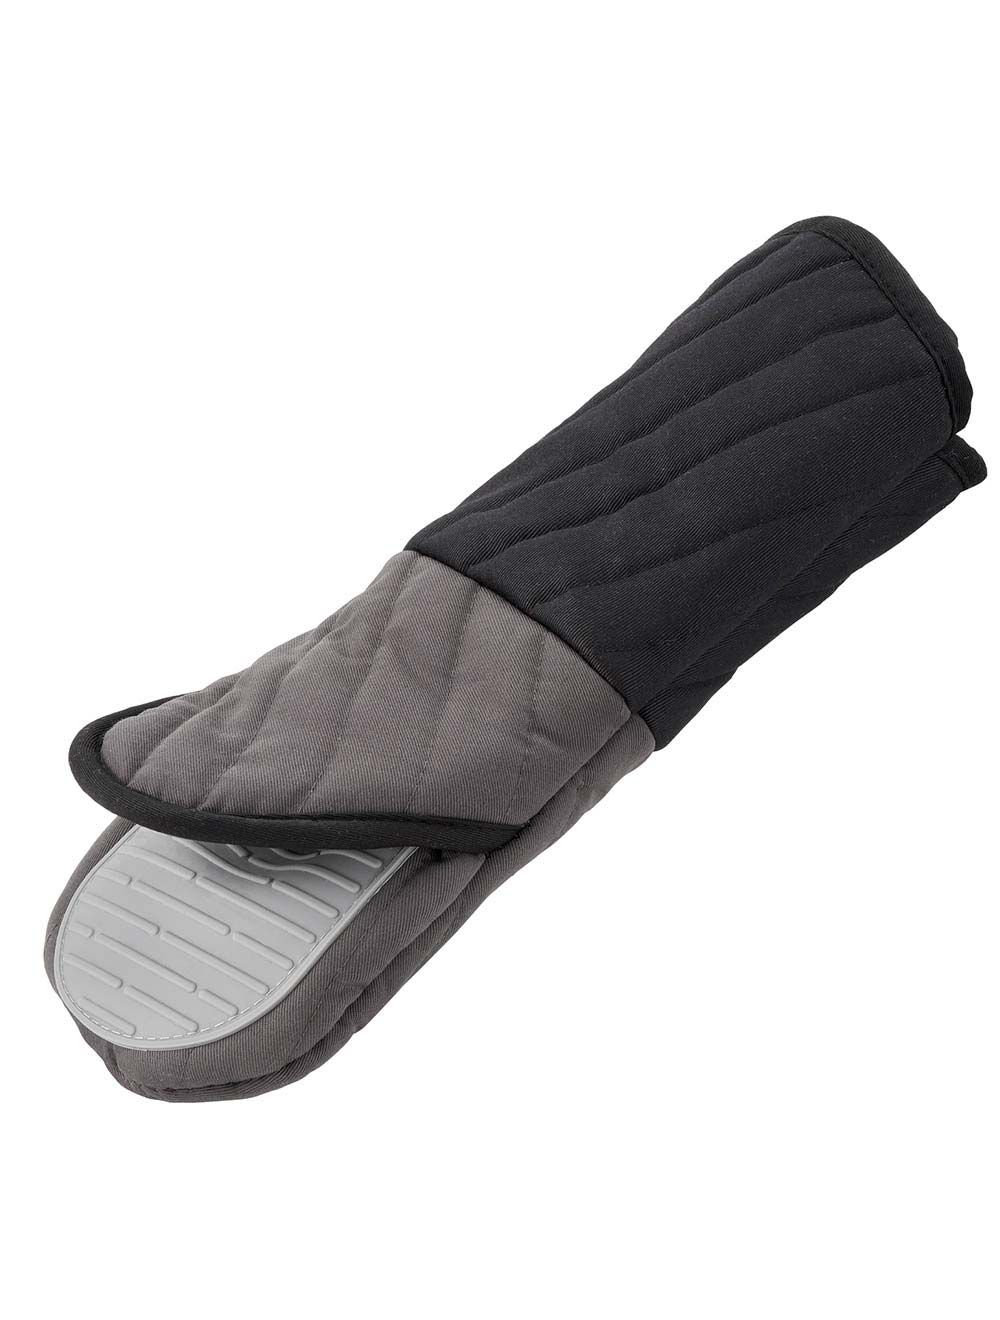 Tefal Comfort Kitchen Gloves,K1298214